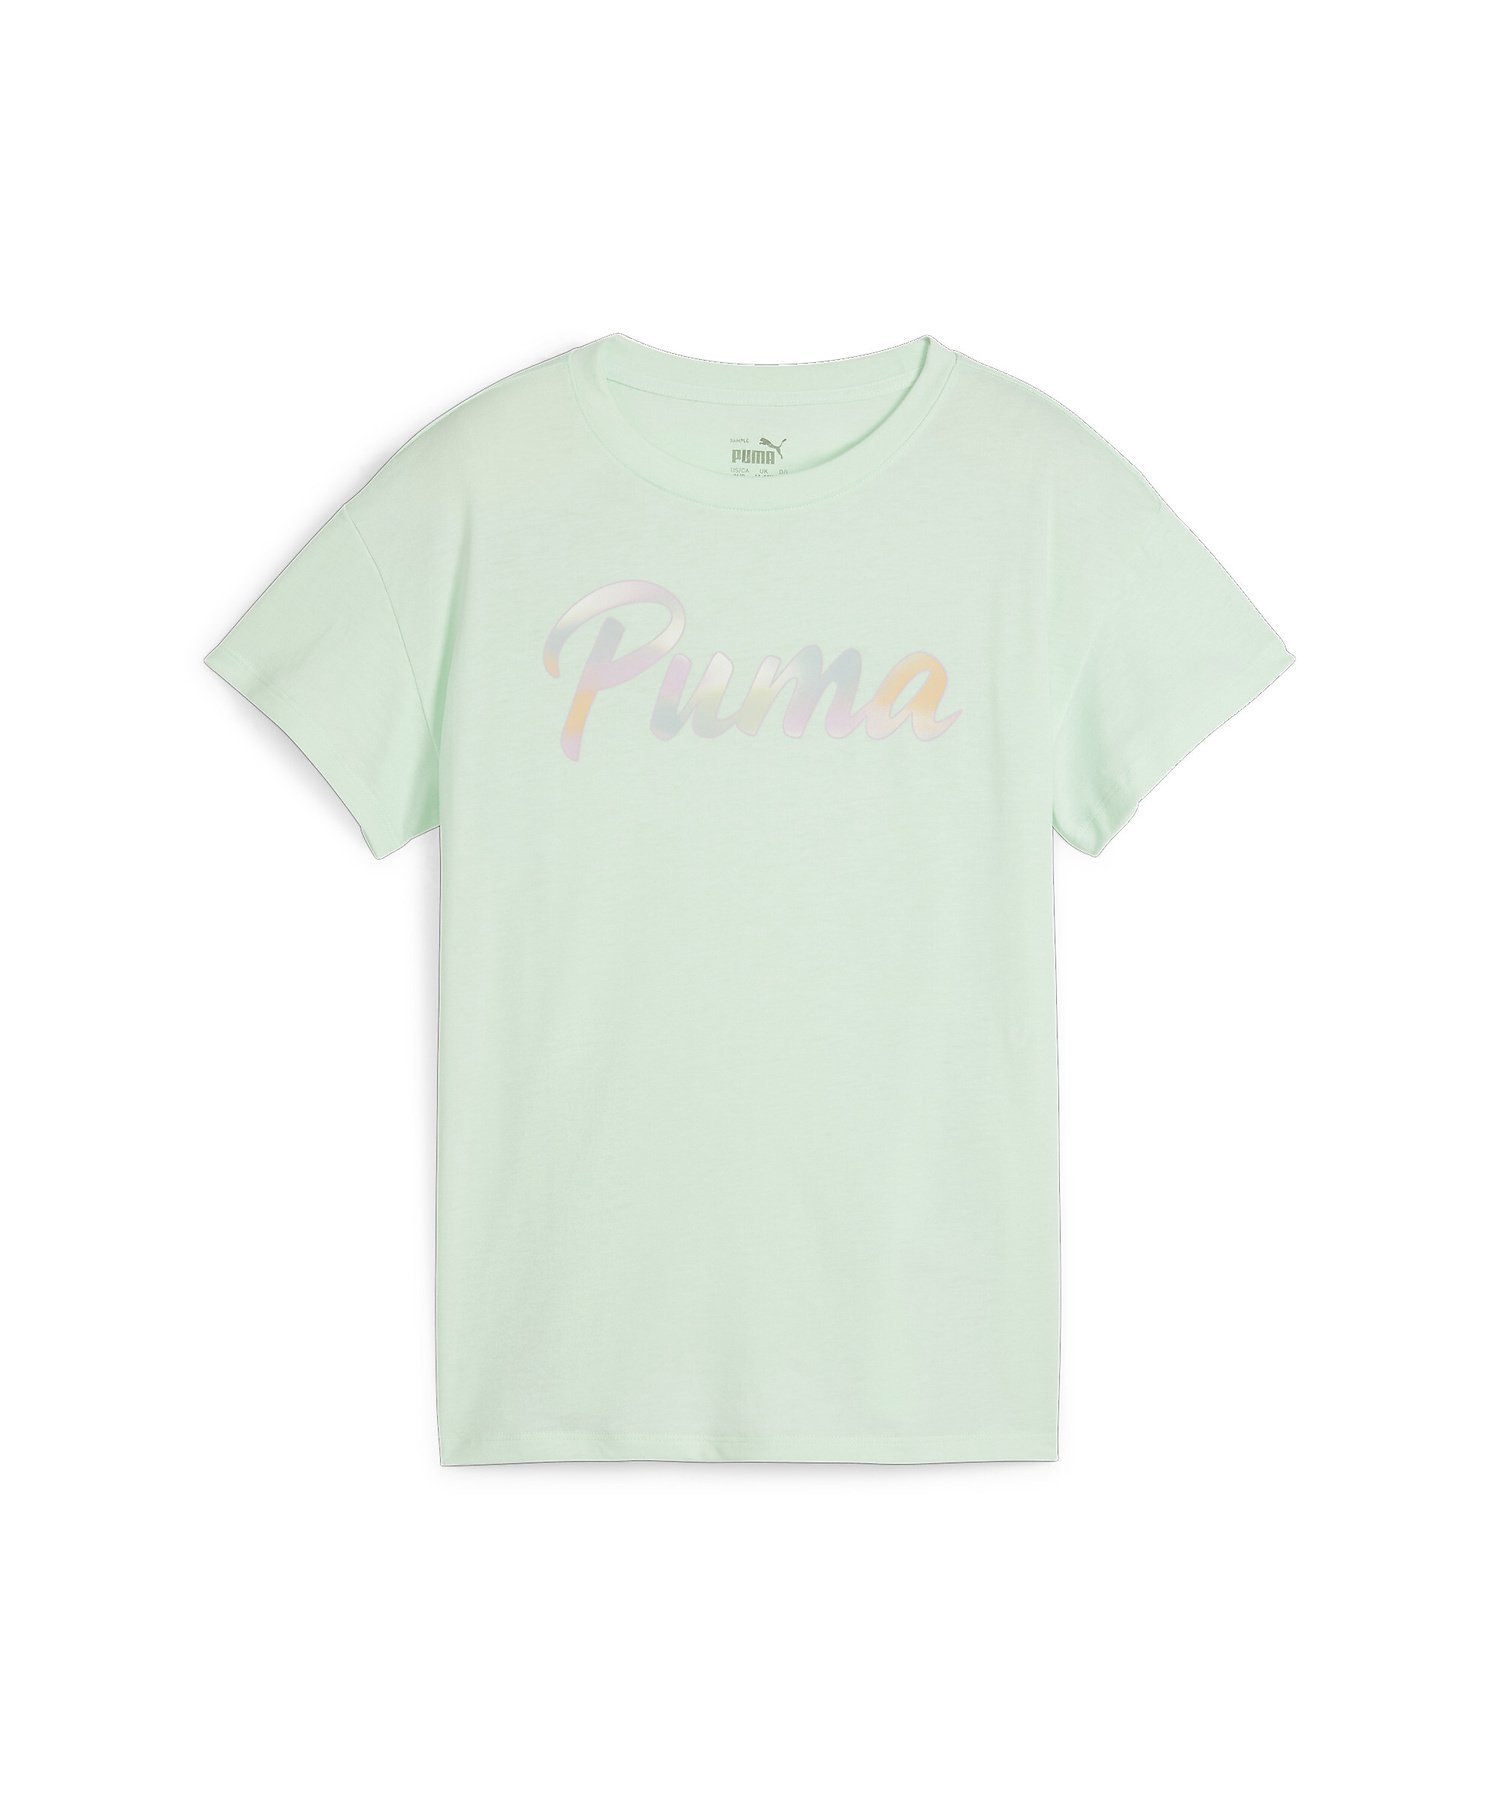 PUMA キッズ ガールズ サマーデーズ ボーイフレンド 半袖 Tシャツ 120-160cm プーマ トップス カットソー・Tシャツ